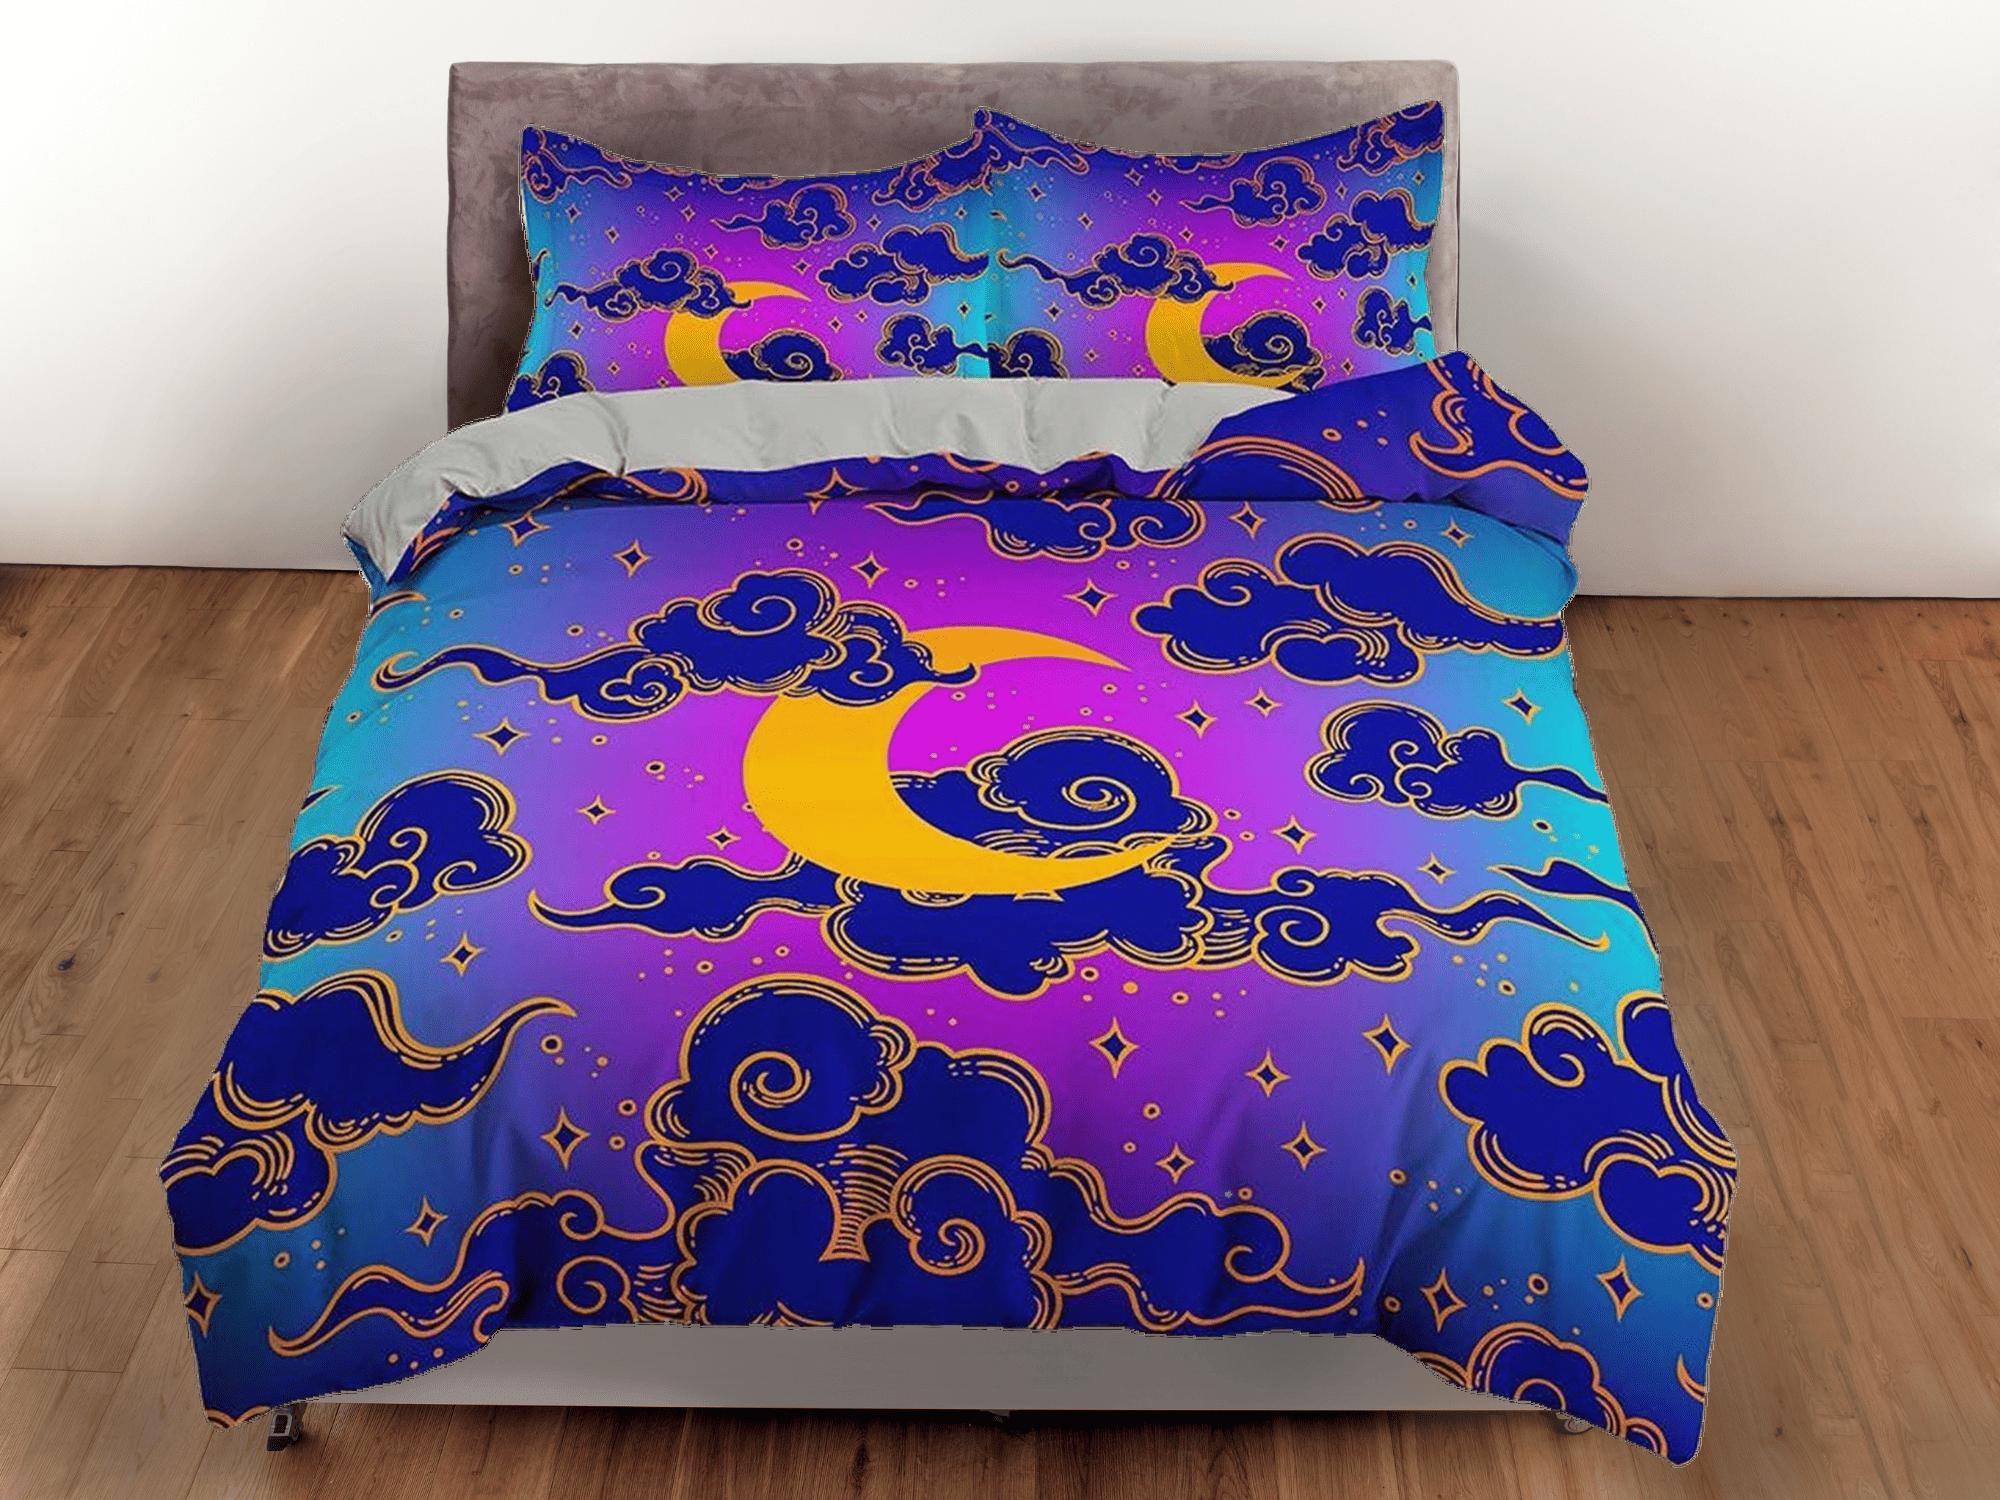 daintyduvet Celestial moon bedding, anime cloud vaporwave, witchy decor dorm bedding, aesthetic duvet, boho bedding set full king queen, astrology gifts